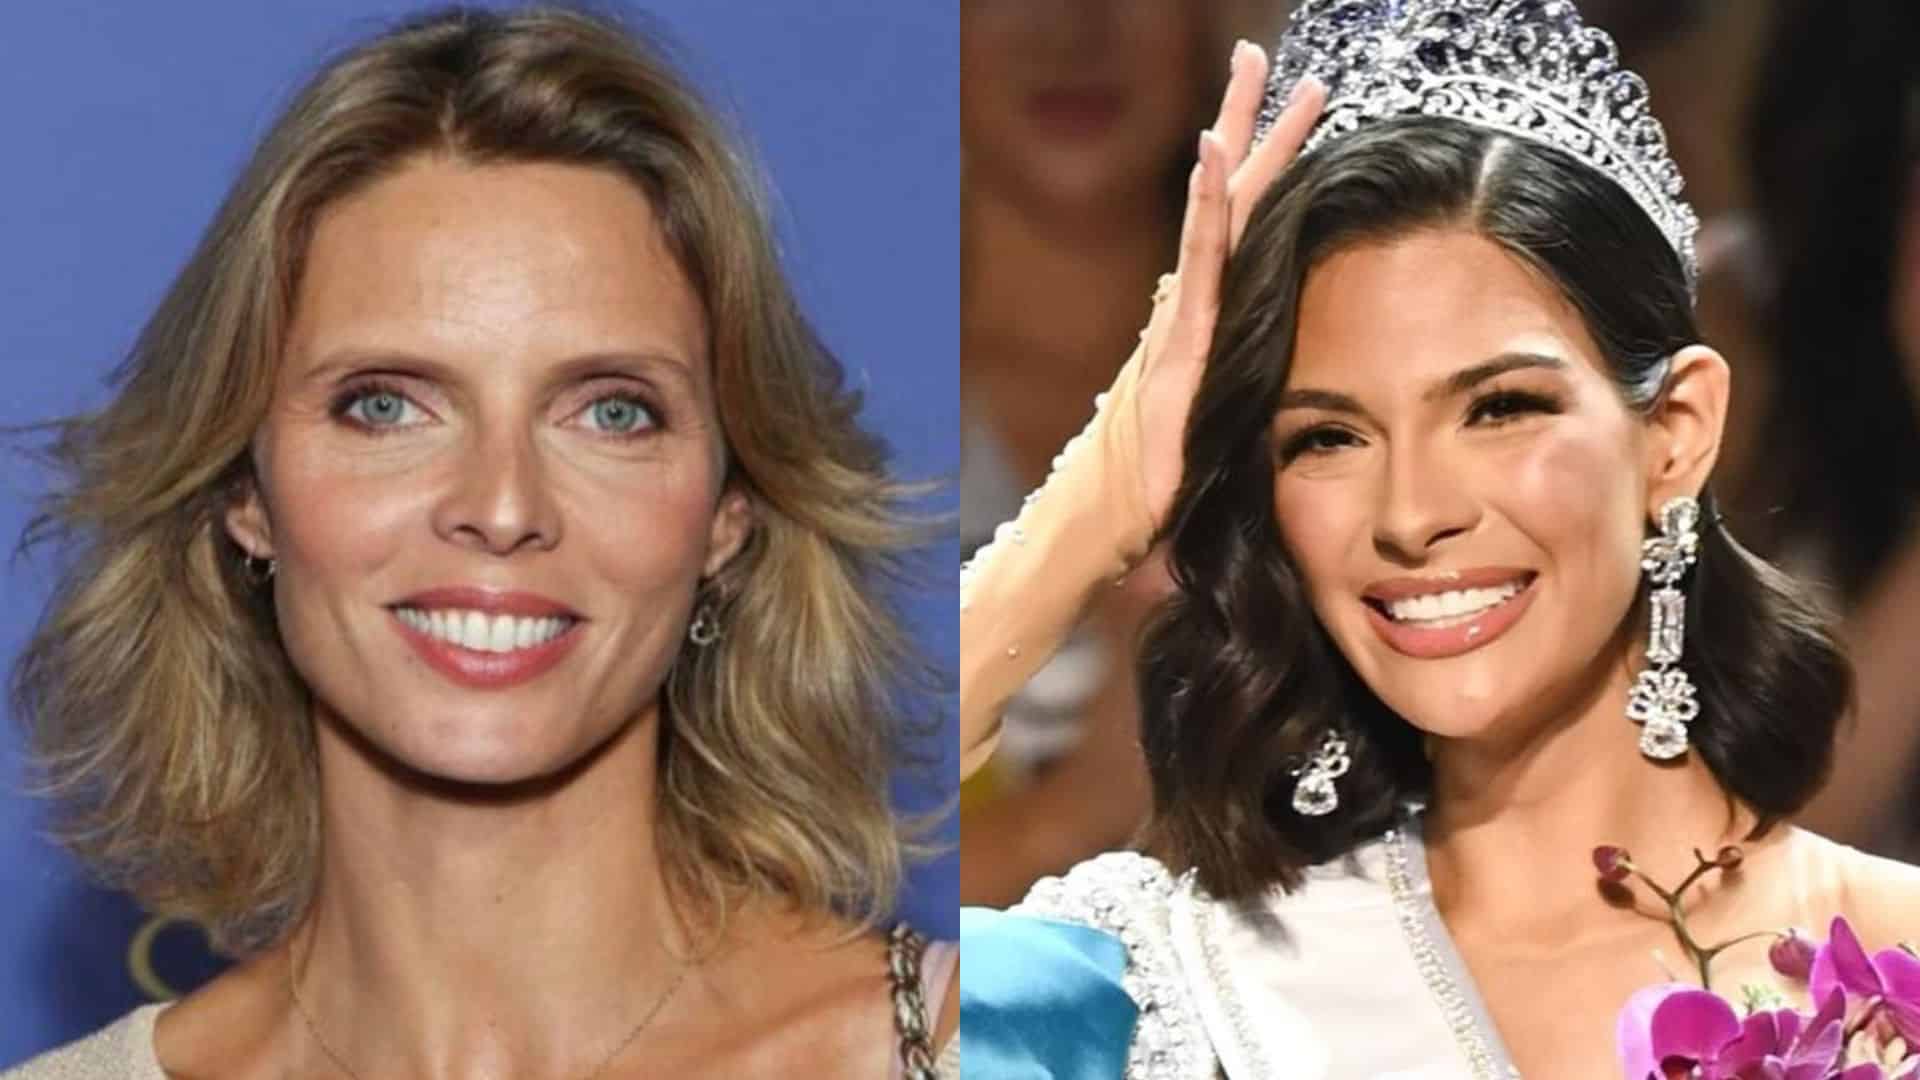 'Ses parents doivent de l'argent' : les propos de Sylvie Tellier sur plusieurs candidates à Miss Univers interpellent les internautes